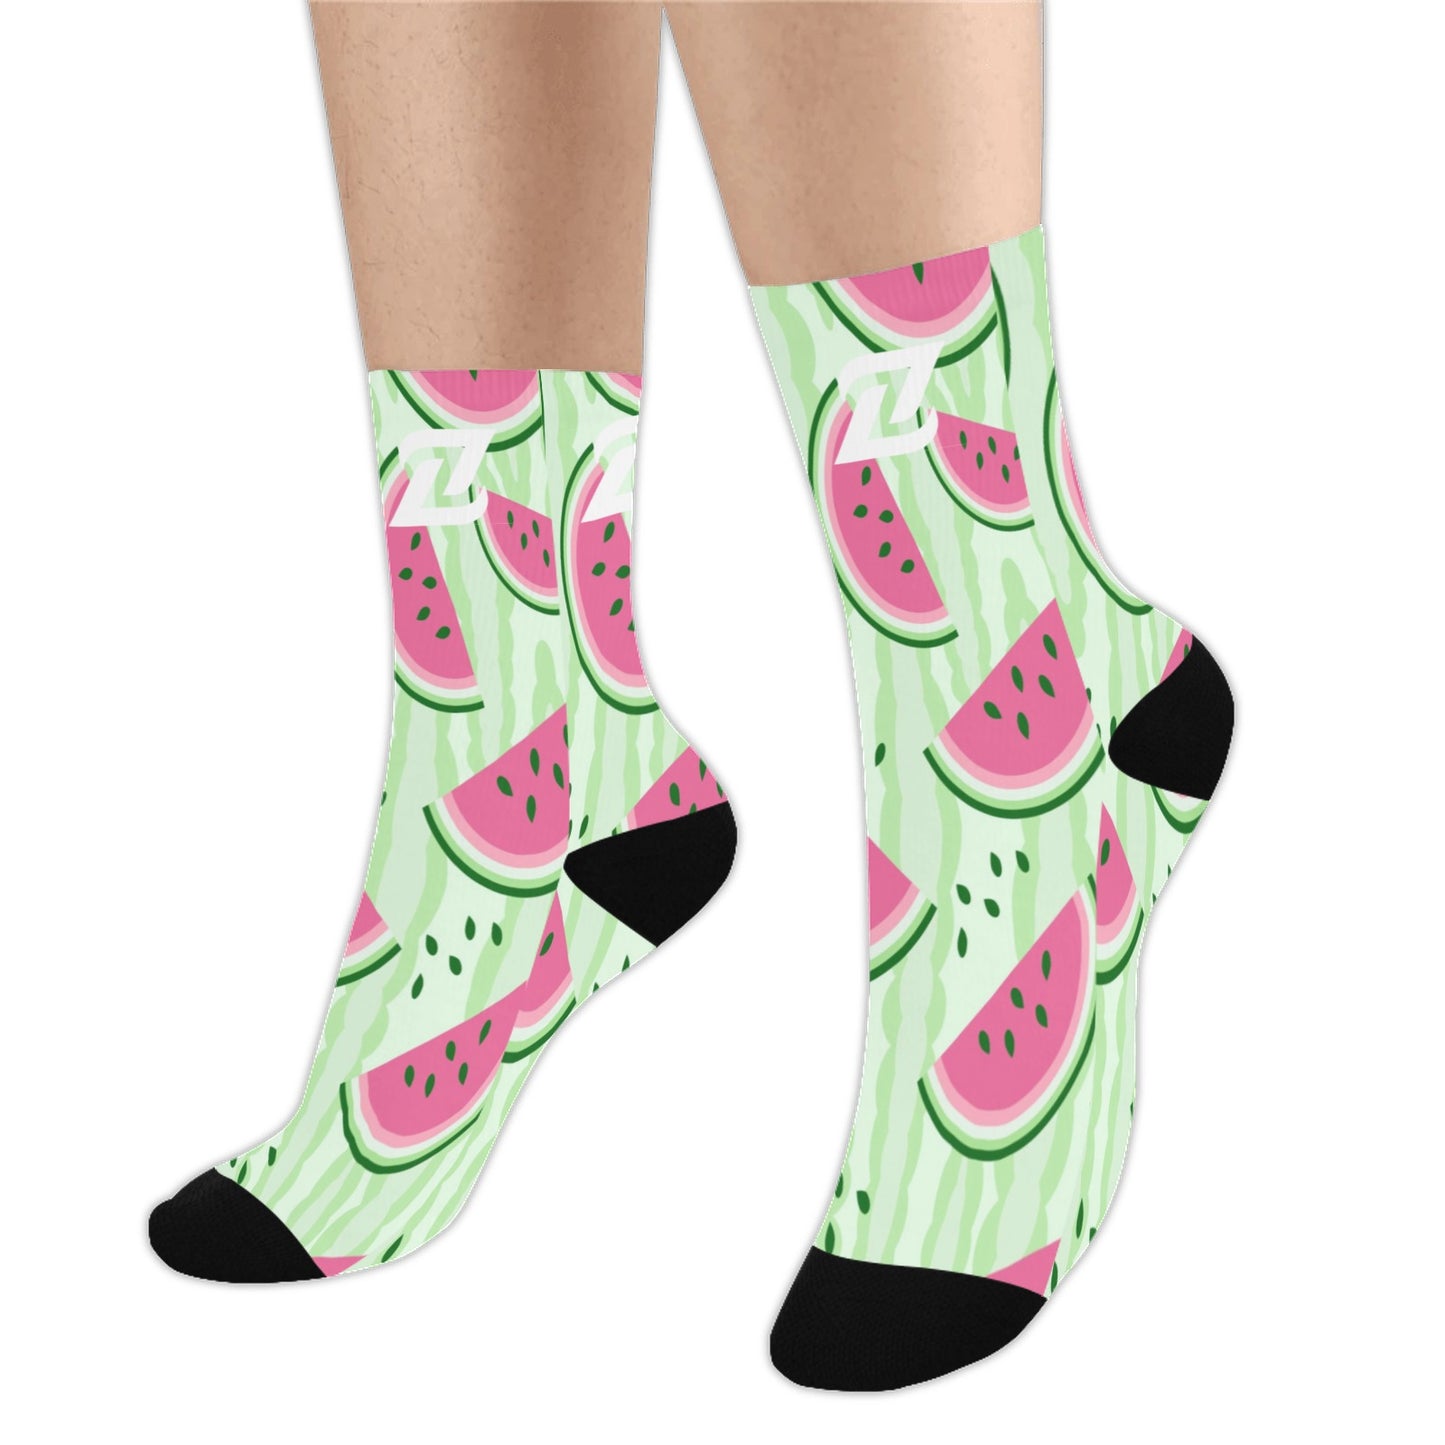 Zen Socks - Watermelon